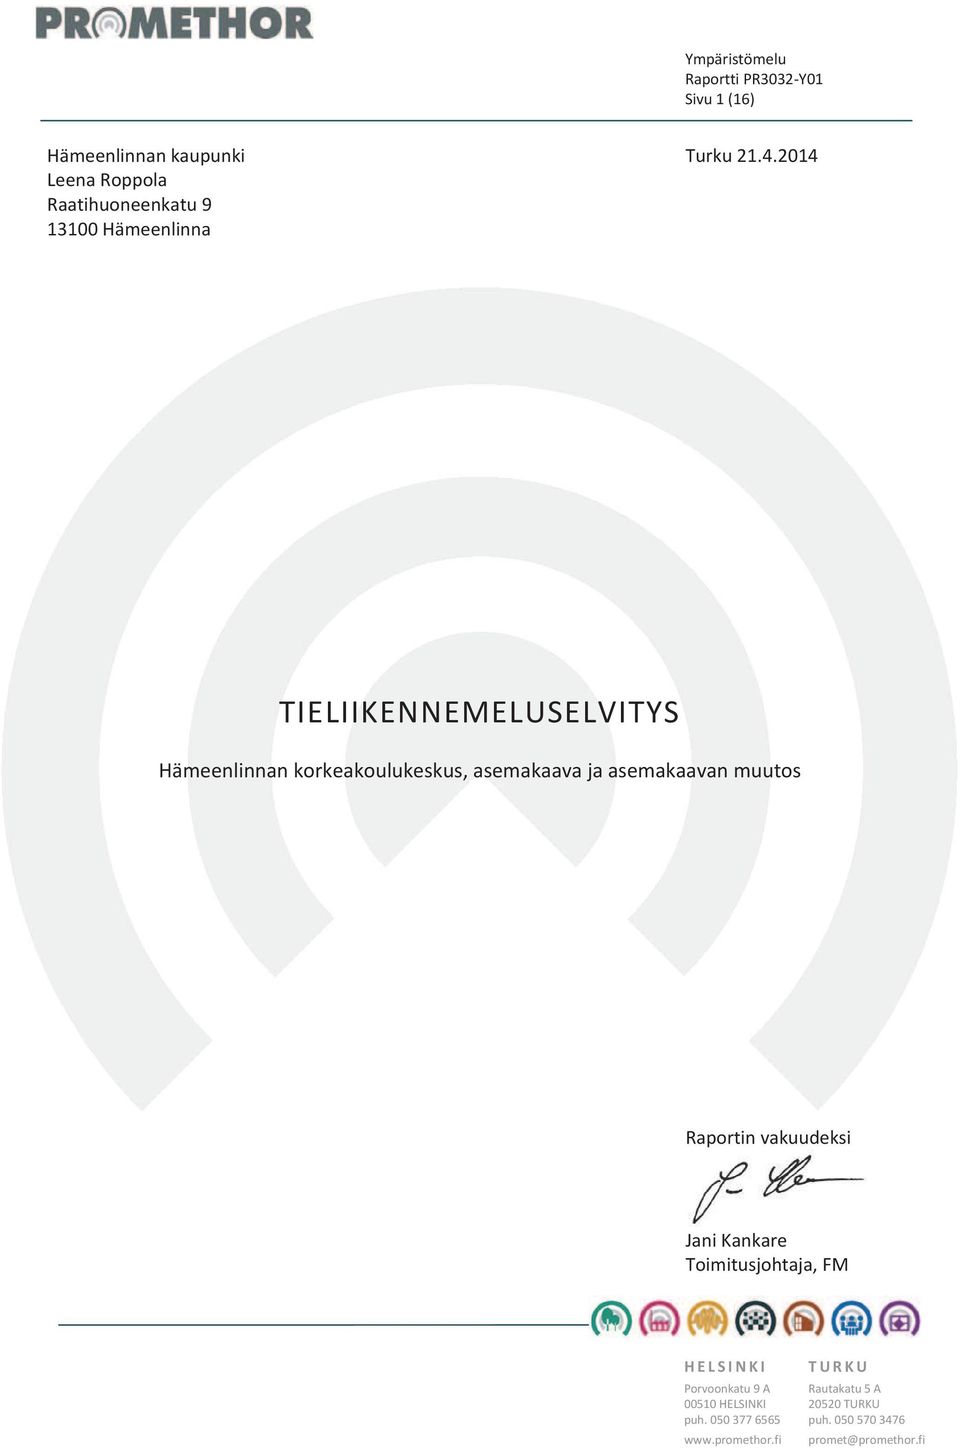 Hämeenlinnankorkeakoulukeskus,asemakaavajaasemakaavanmuutos Raportinvakuudeksi JaniKankare